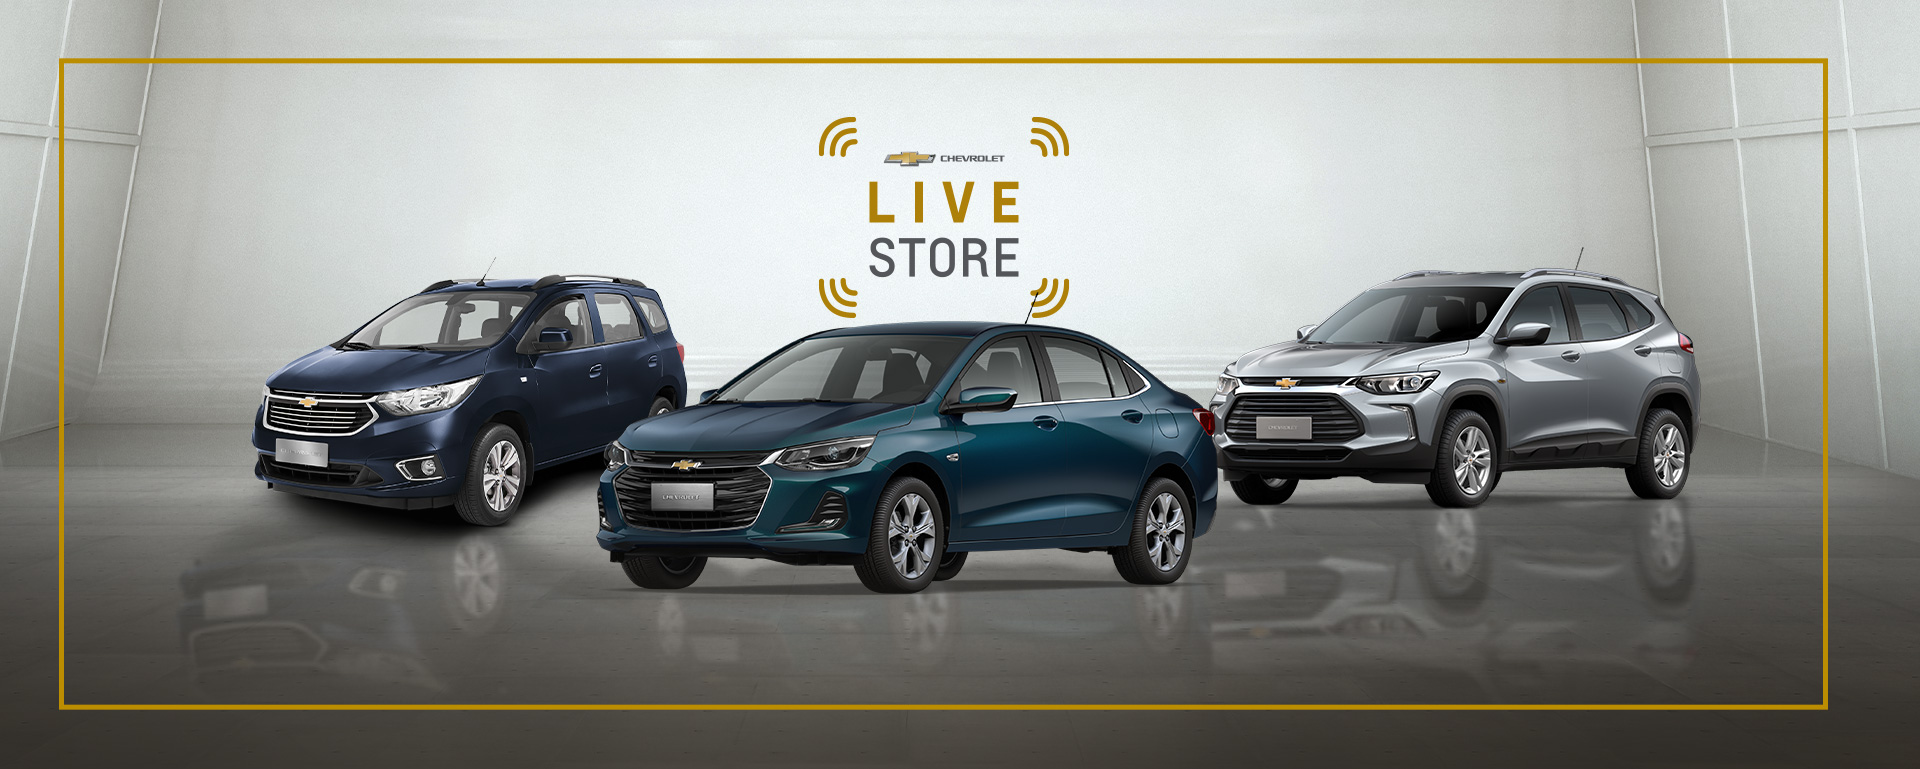 Na imagem aparecem três modelos de veículos da Chevrolet, com os dizeres 'Chevrolet Live Store'.